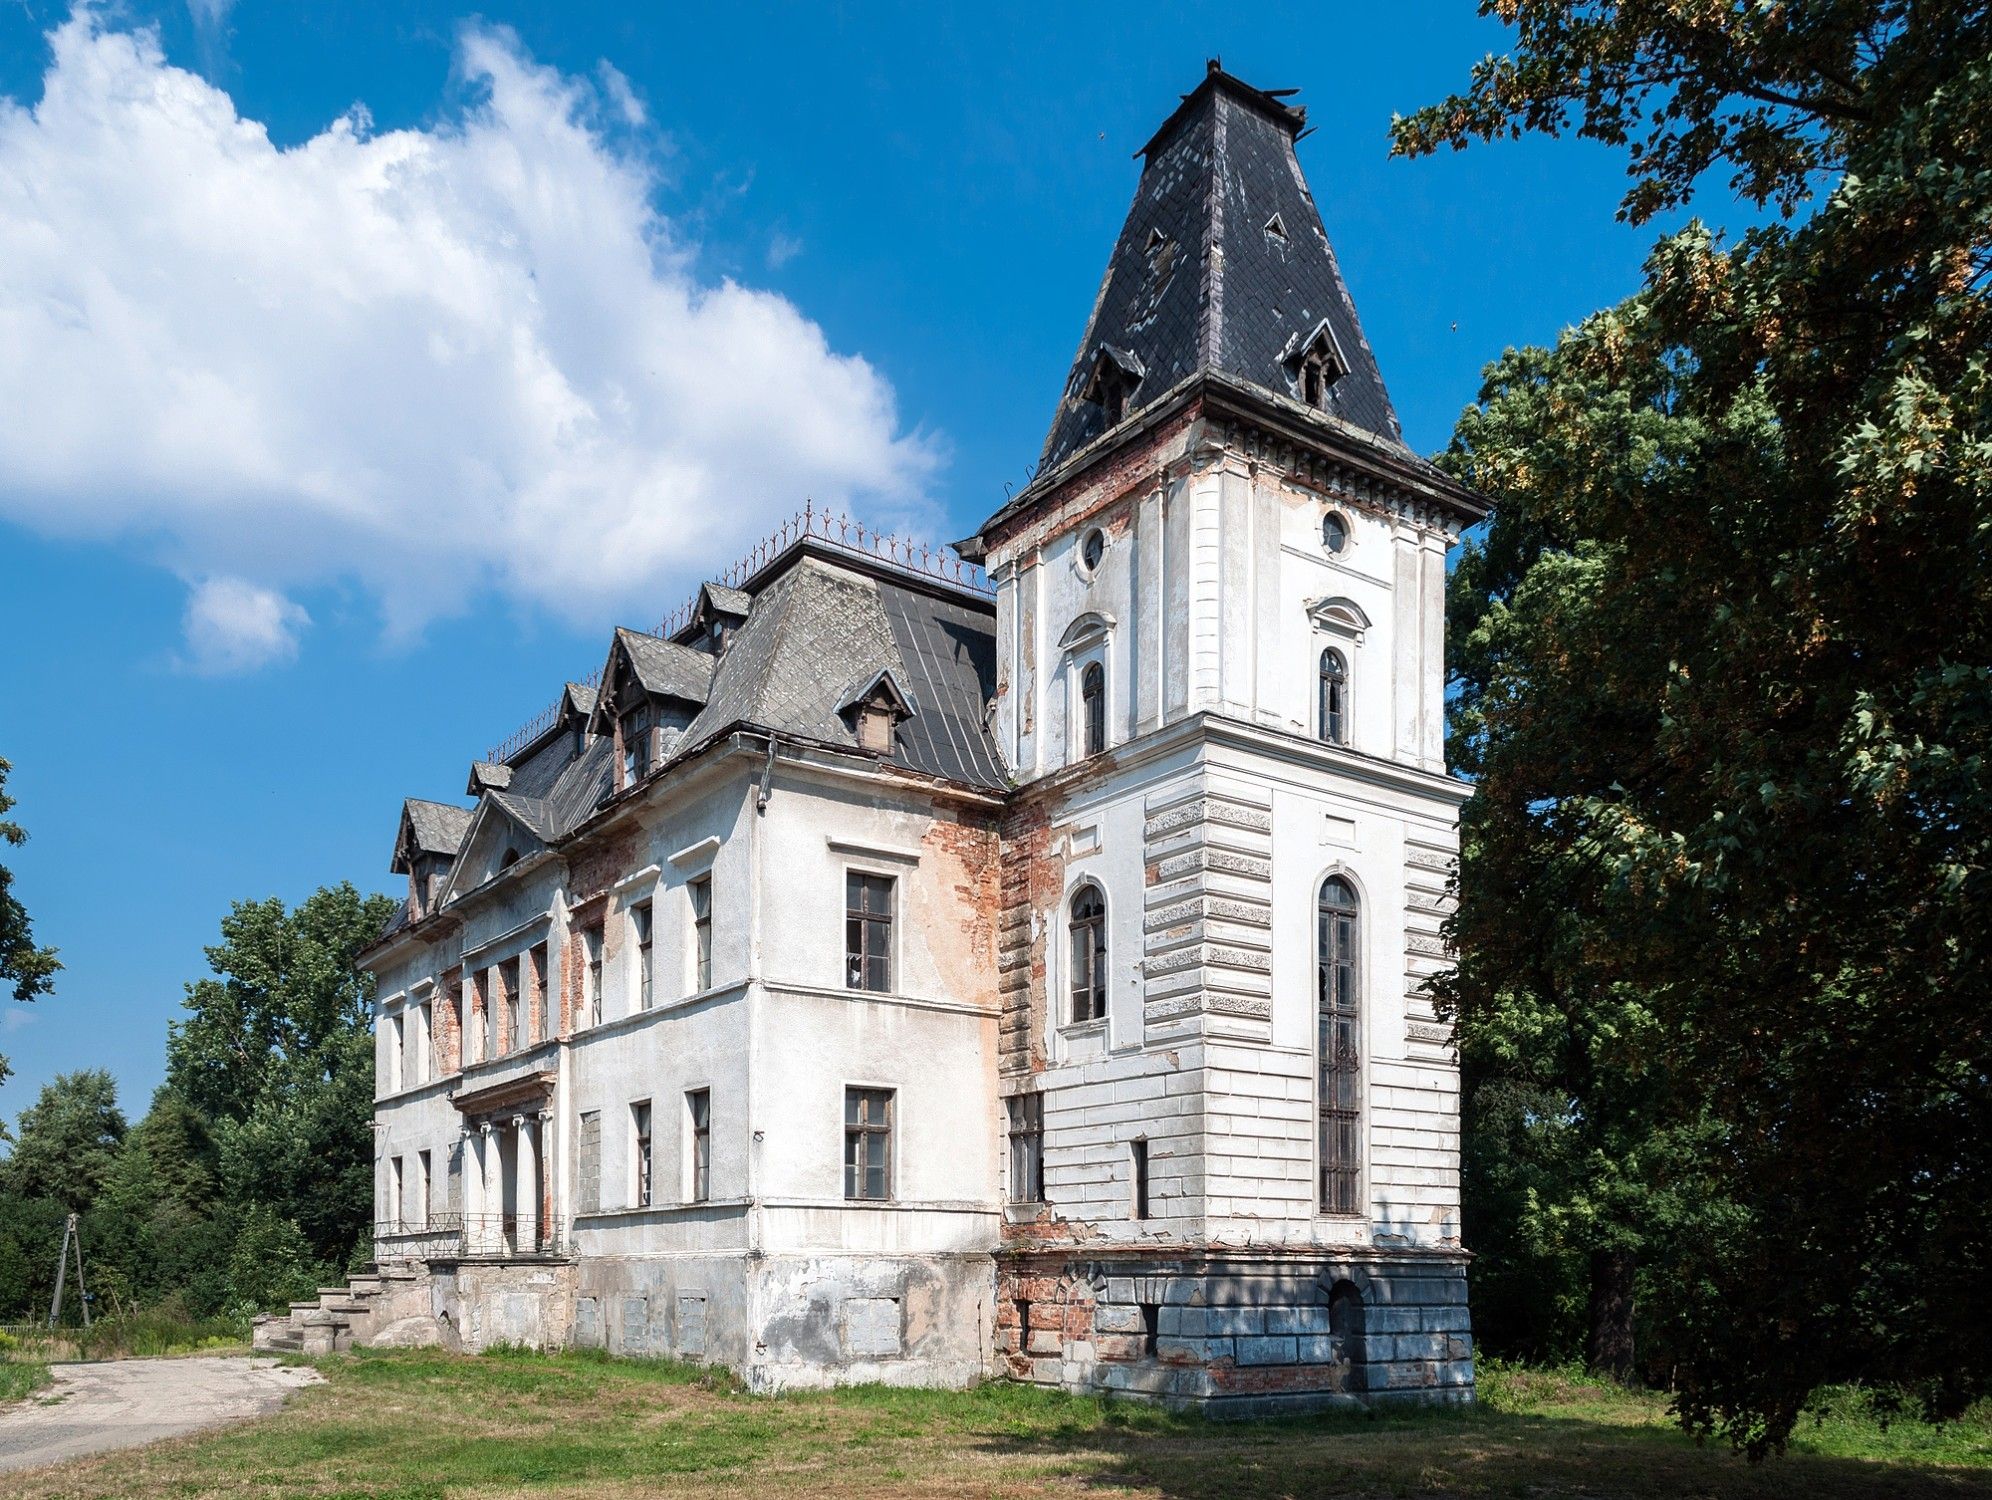 Zdjęcia Folwark i pałac w Budziwojowie koło Legnicy